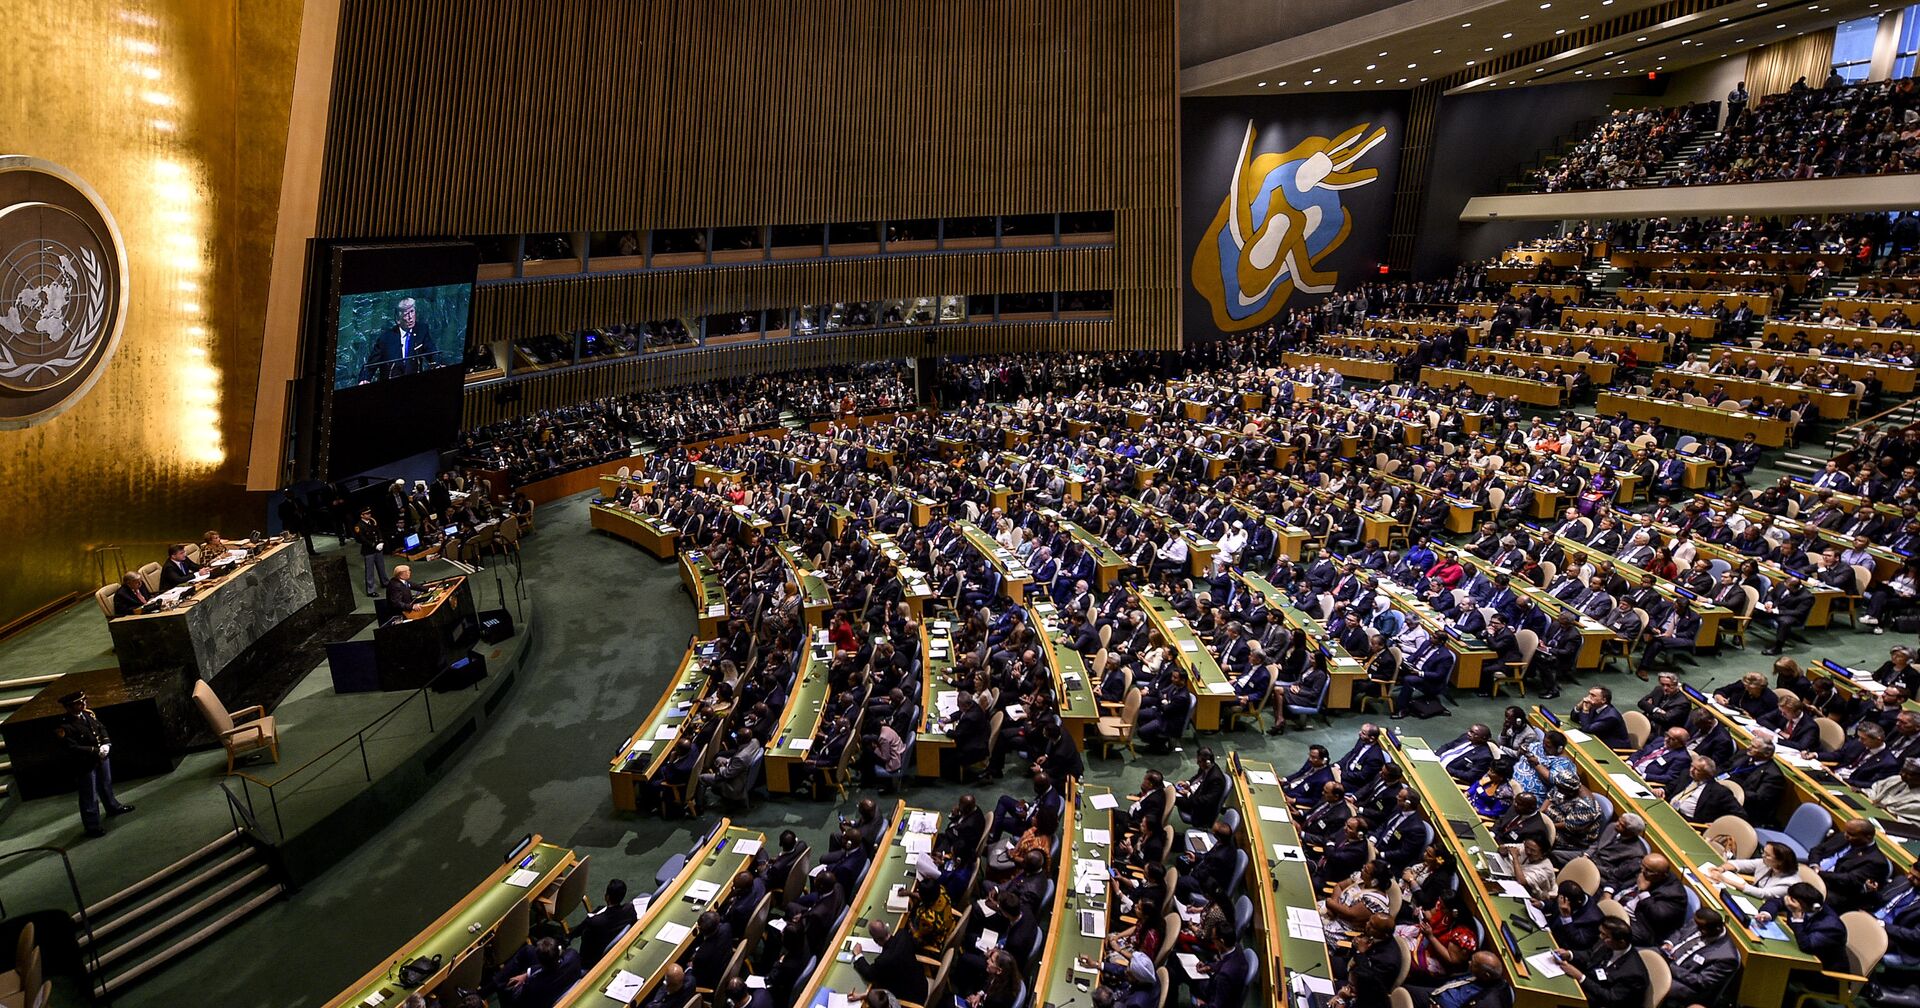 Заседание Генеральной Ассамблеи ООН в Нью-Йорке. 19 сентября 2017 - ИноСМИ, 1920, 18.04.2021